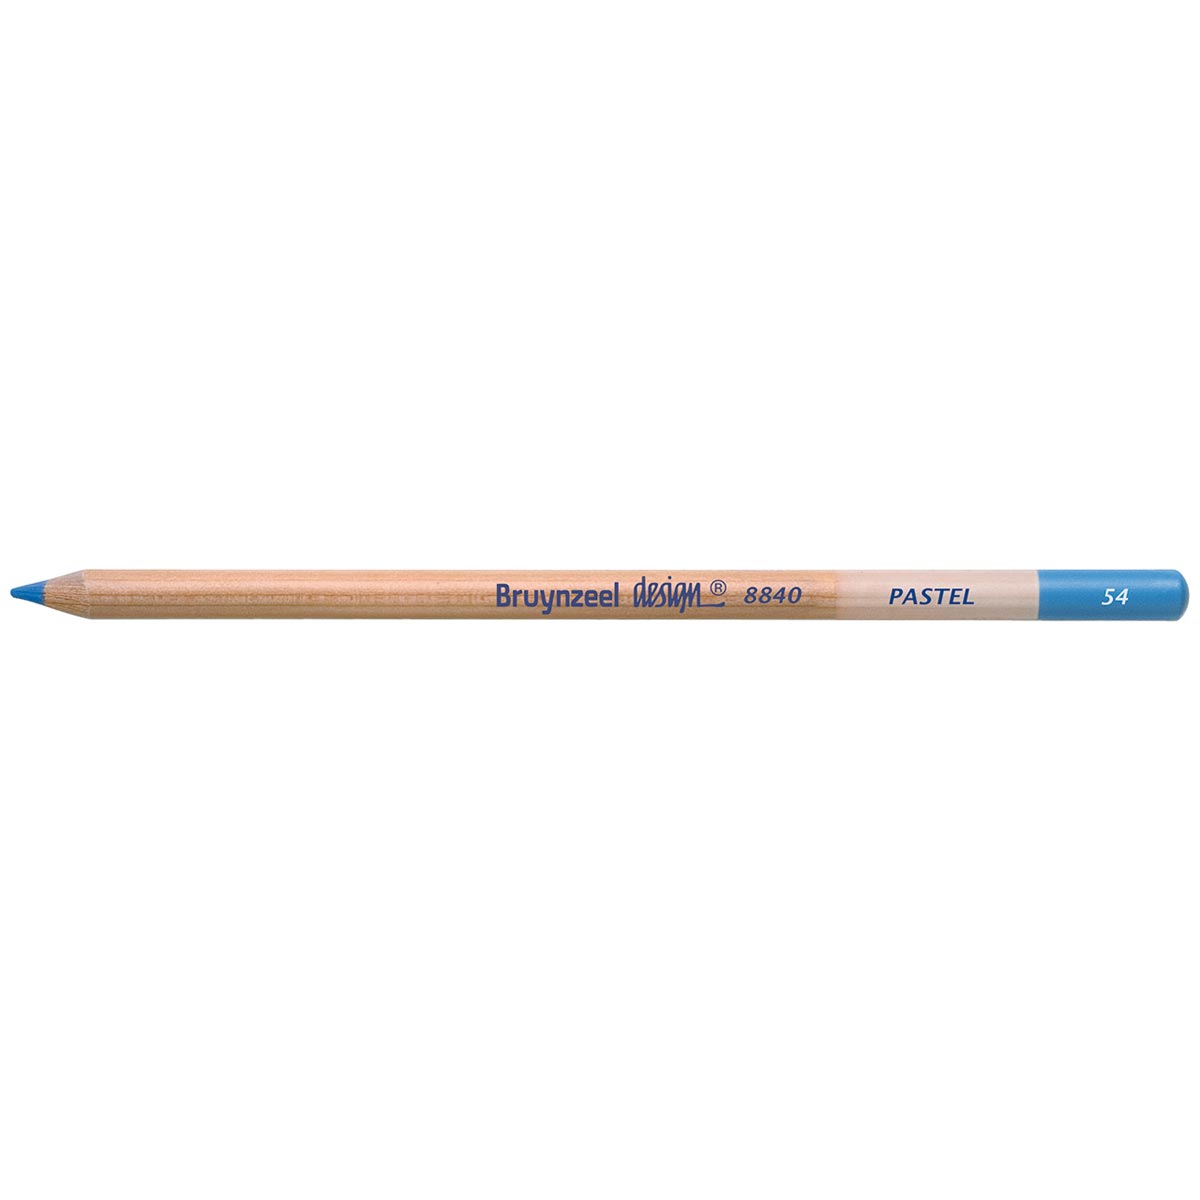 Bruynzeel Design Pastel Pencil - Cerulean Blue 54